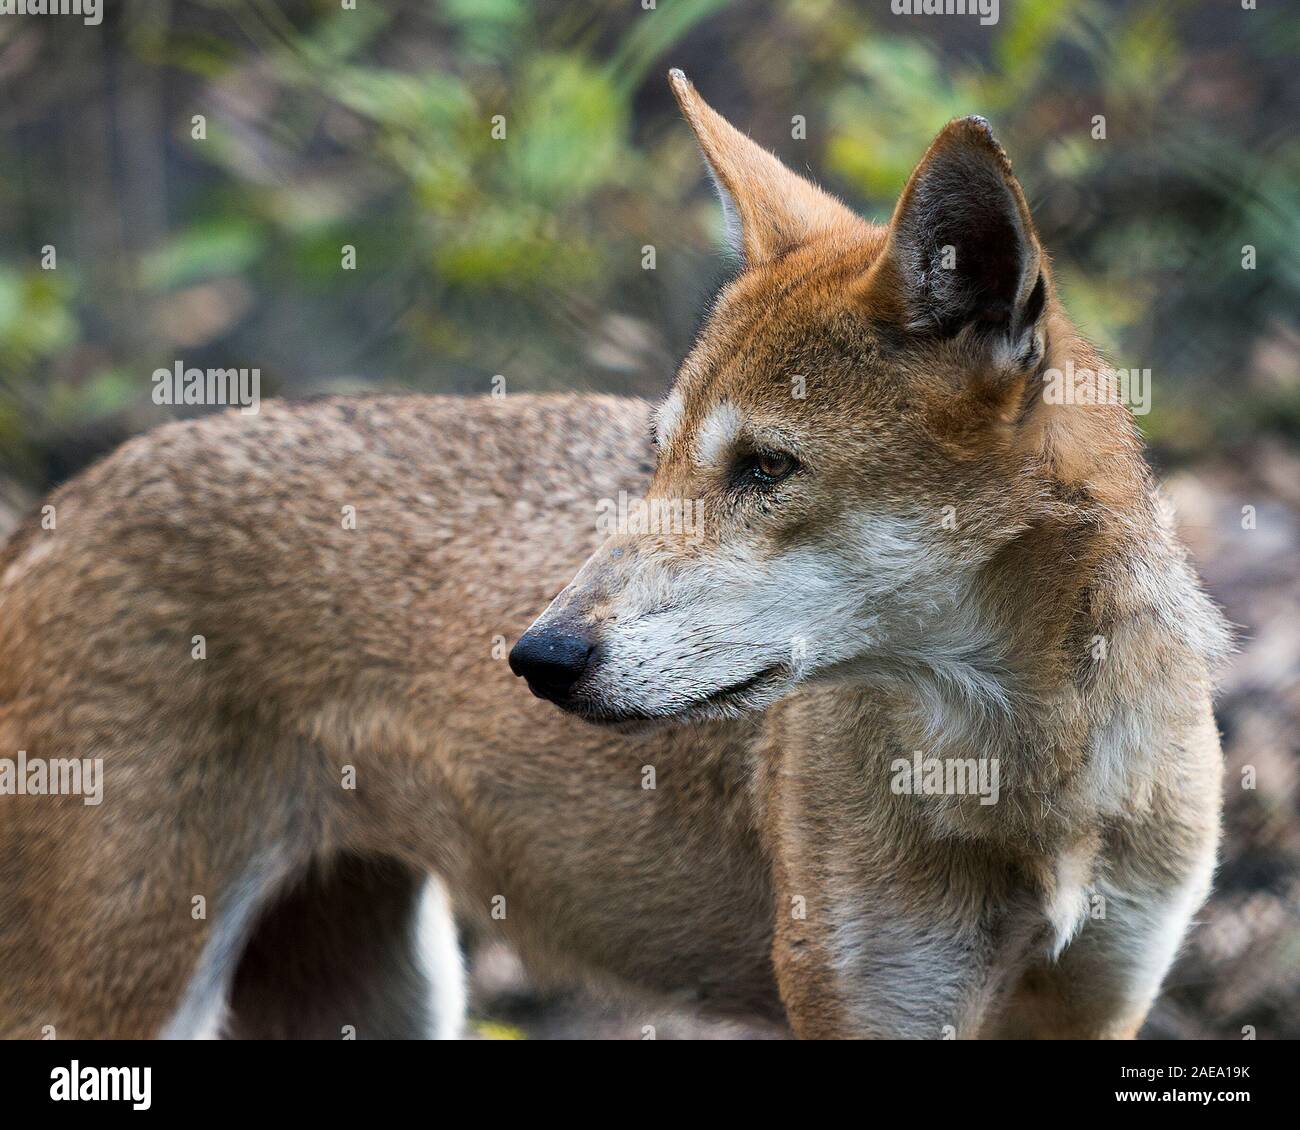 Wolf Tierkopf close-up Profil anzeigen im Wald mit Vorder- und Hintergrund Laub Hintergrund in seiner Umgebung und Umwelt. Stockfoto